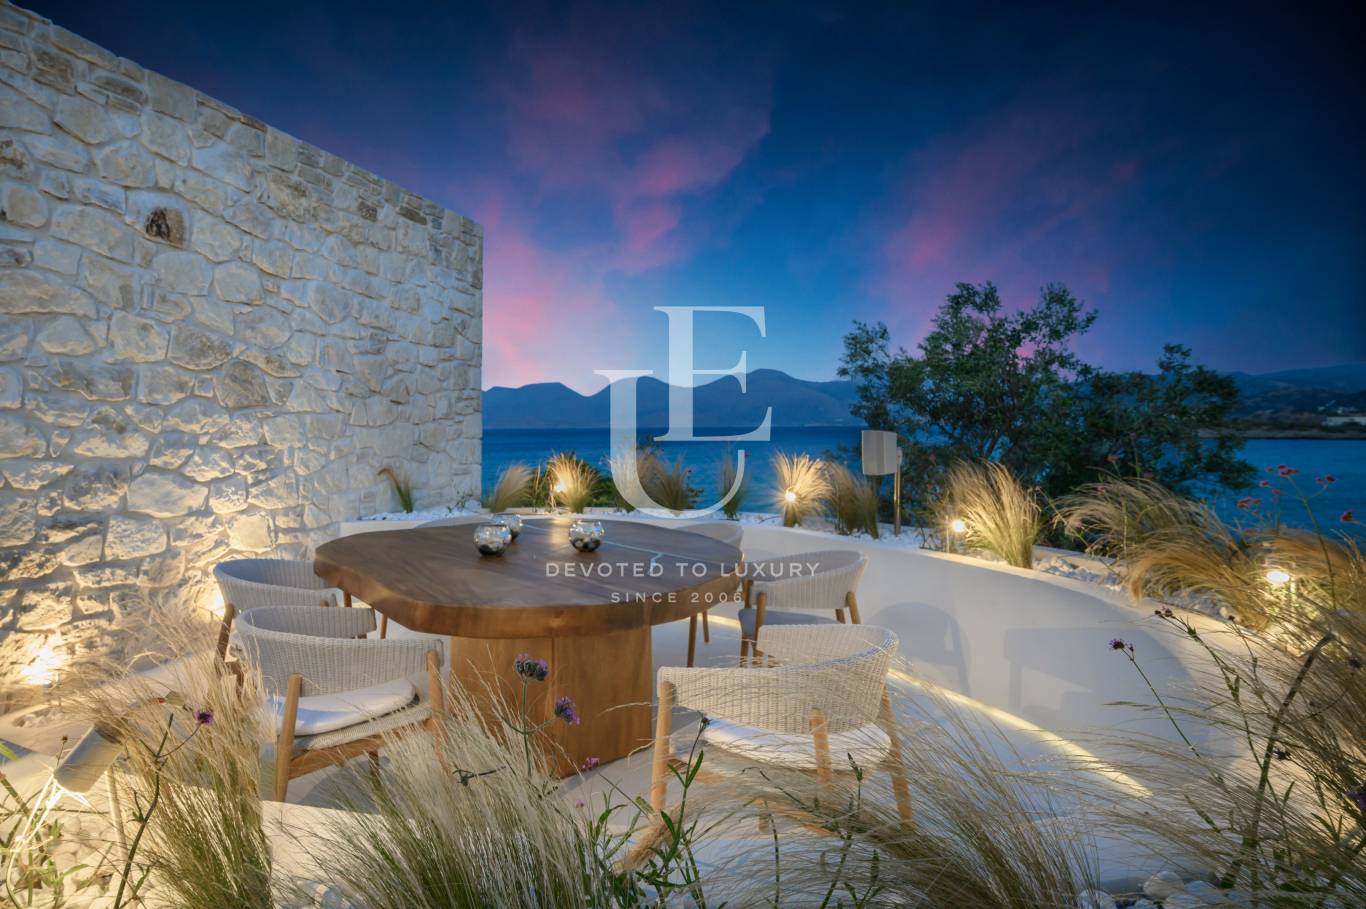 Хотел / Apartment house за продажба в остров Крит,  - код на имота: N21077 - image 8